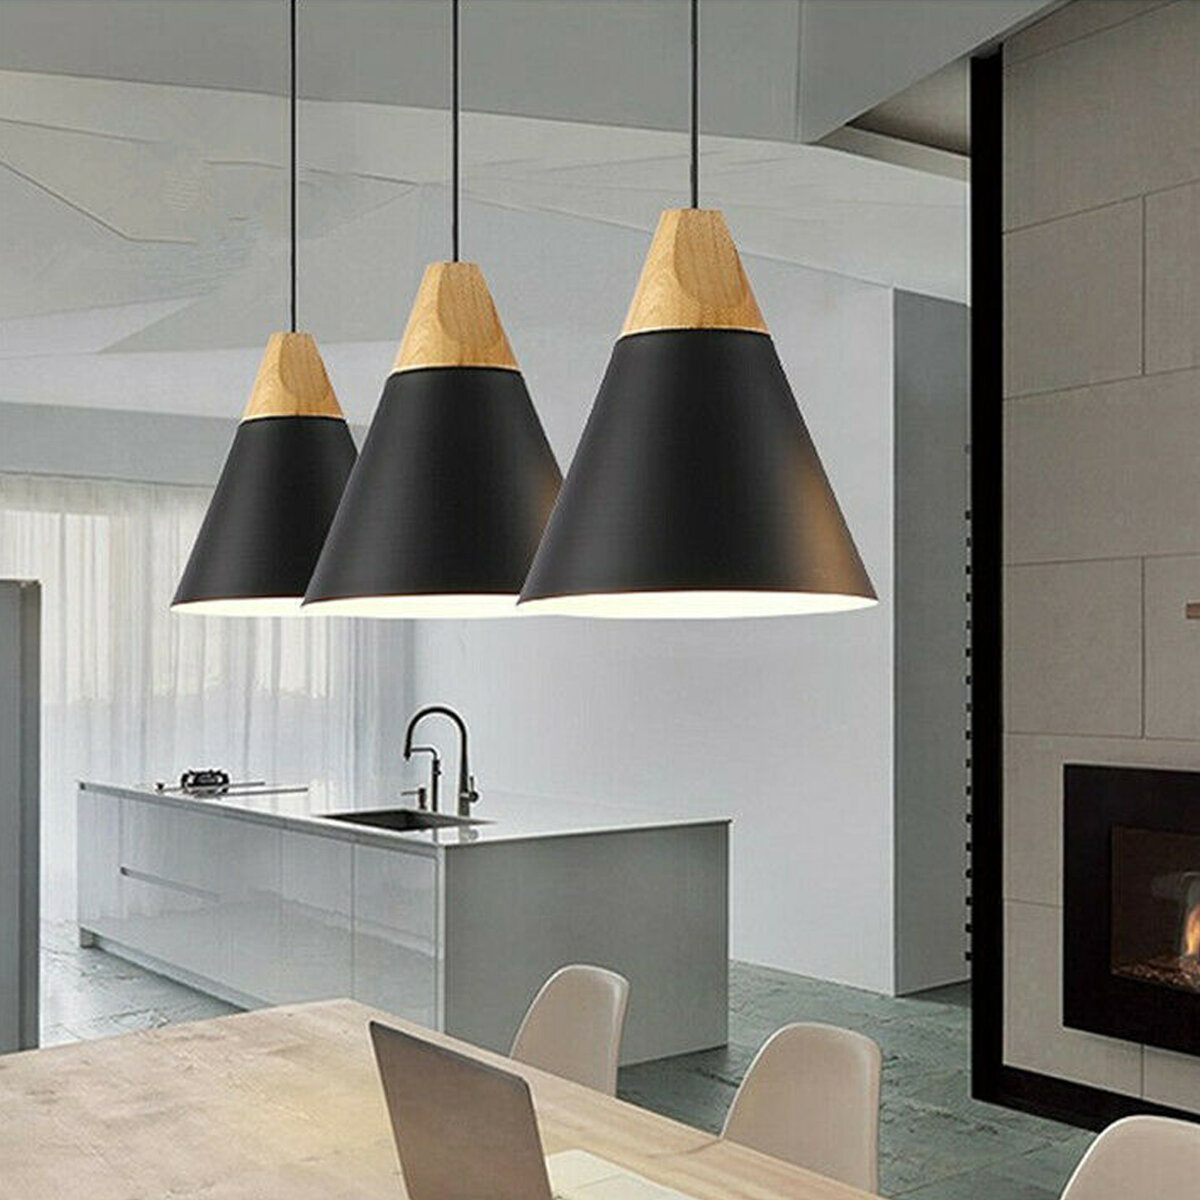 Modern Pendant Lighting Nordic, Light For Kitchen Table